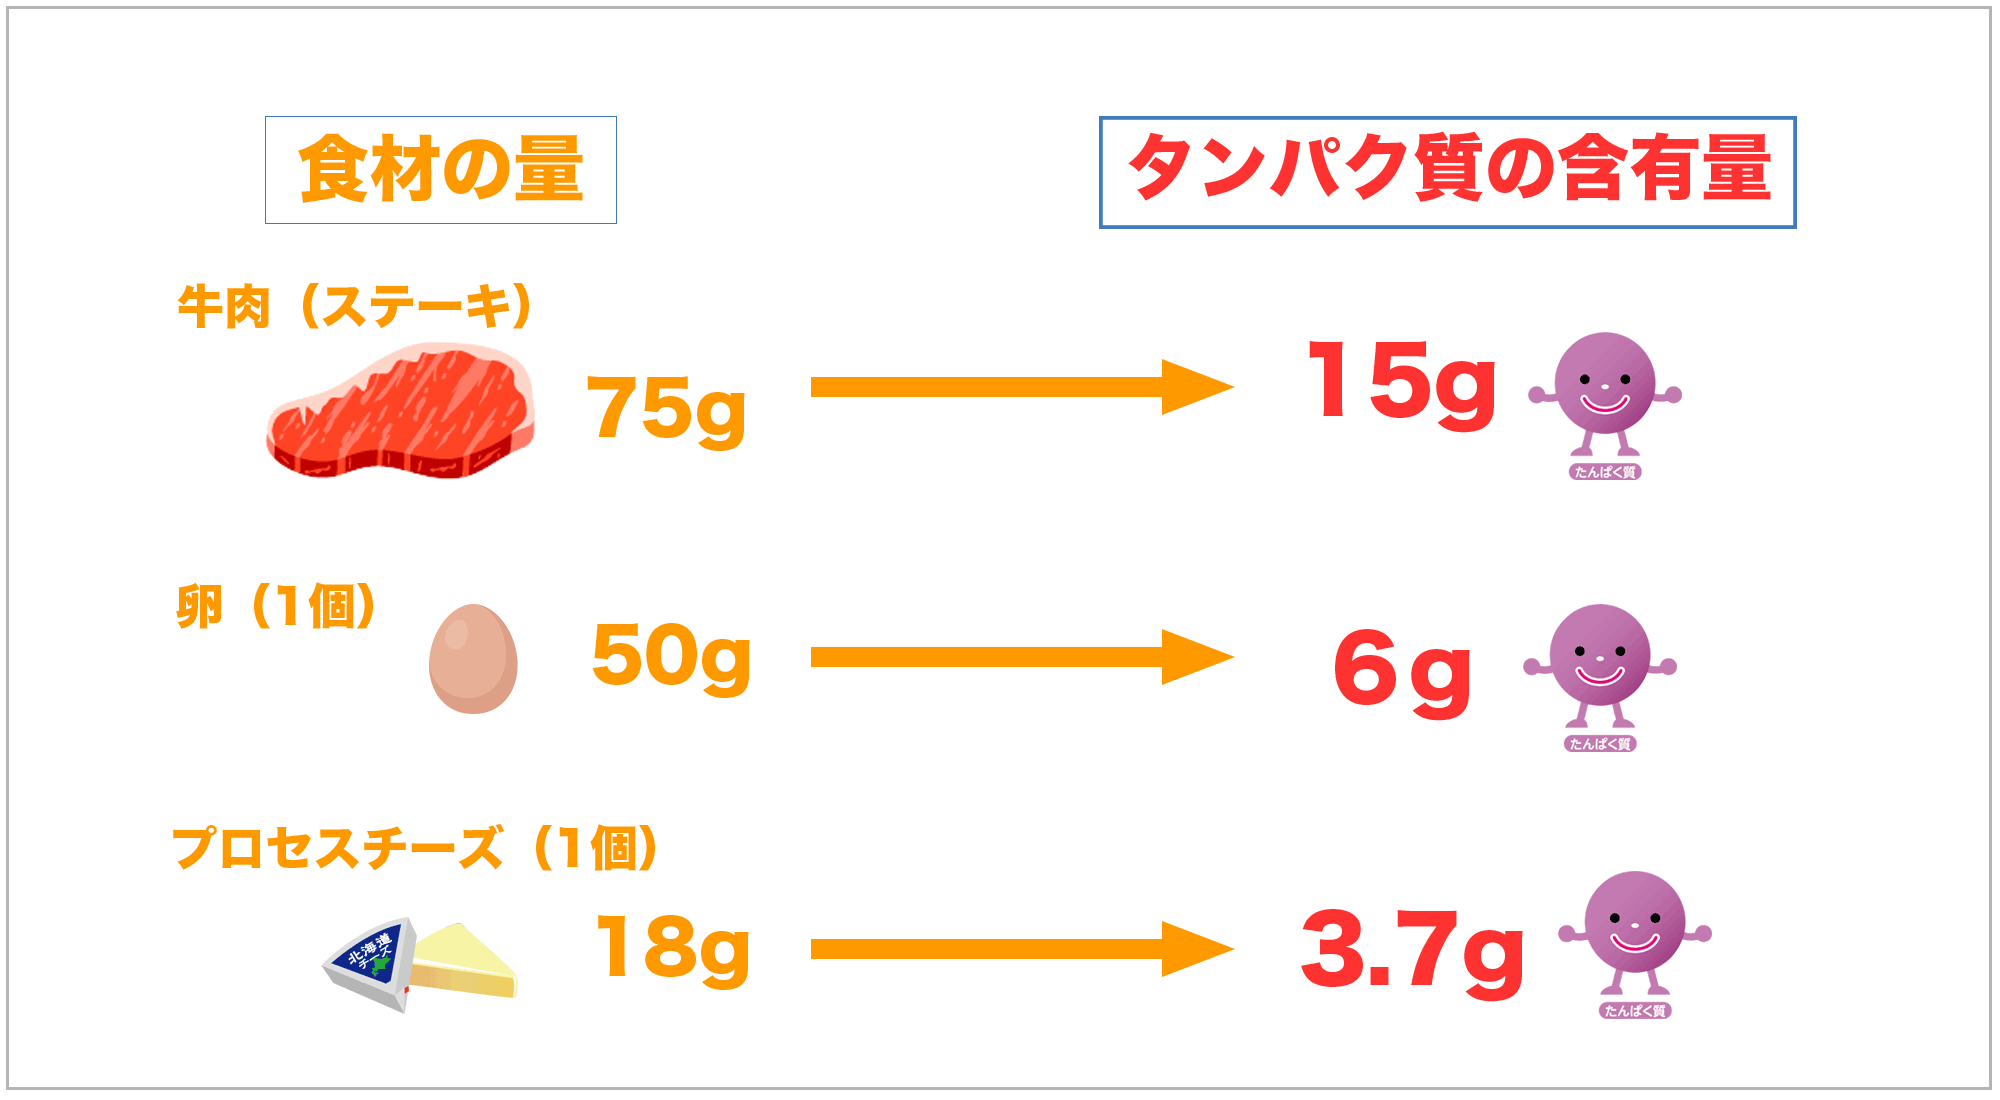 食材に含まれるタンパク質の含有量
牛肉は15g
卵は6g
プロセスチーズ3.7g